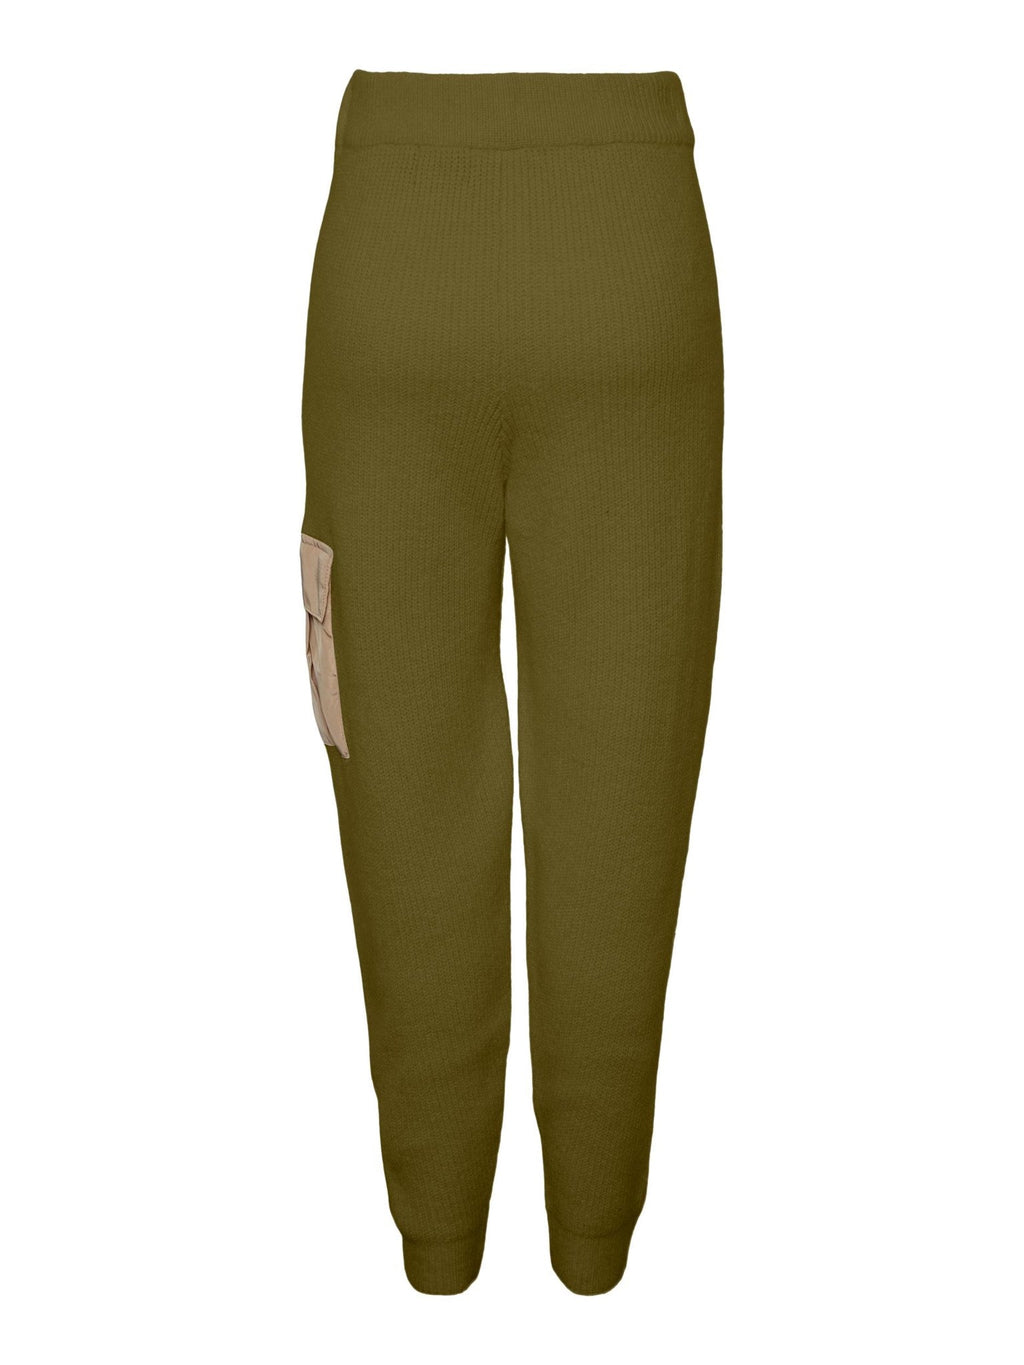 Naura Knit Pants - Fir Green